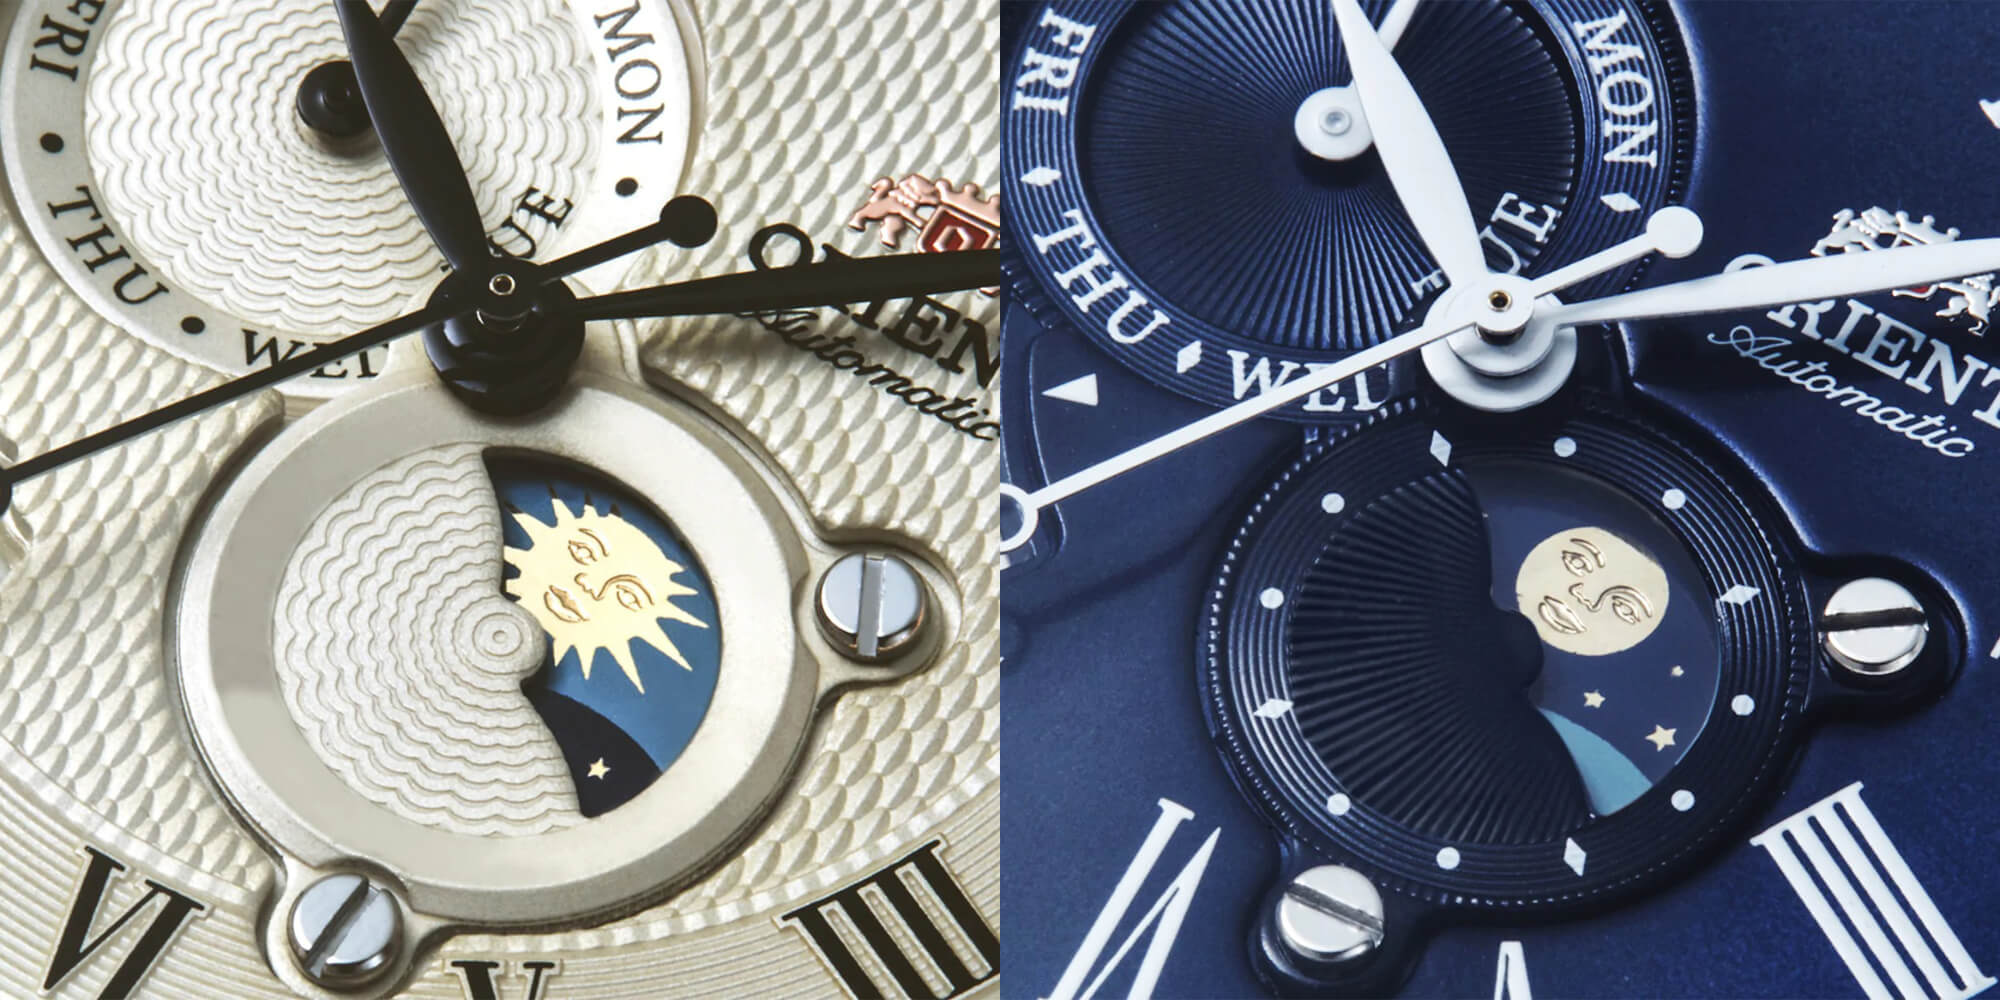 Популярные часы Orient для делового костюма с исключительным дизайном